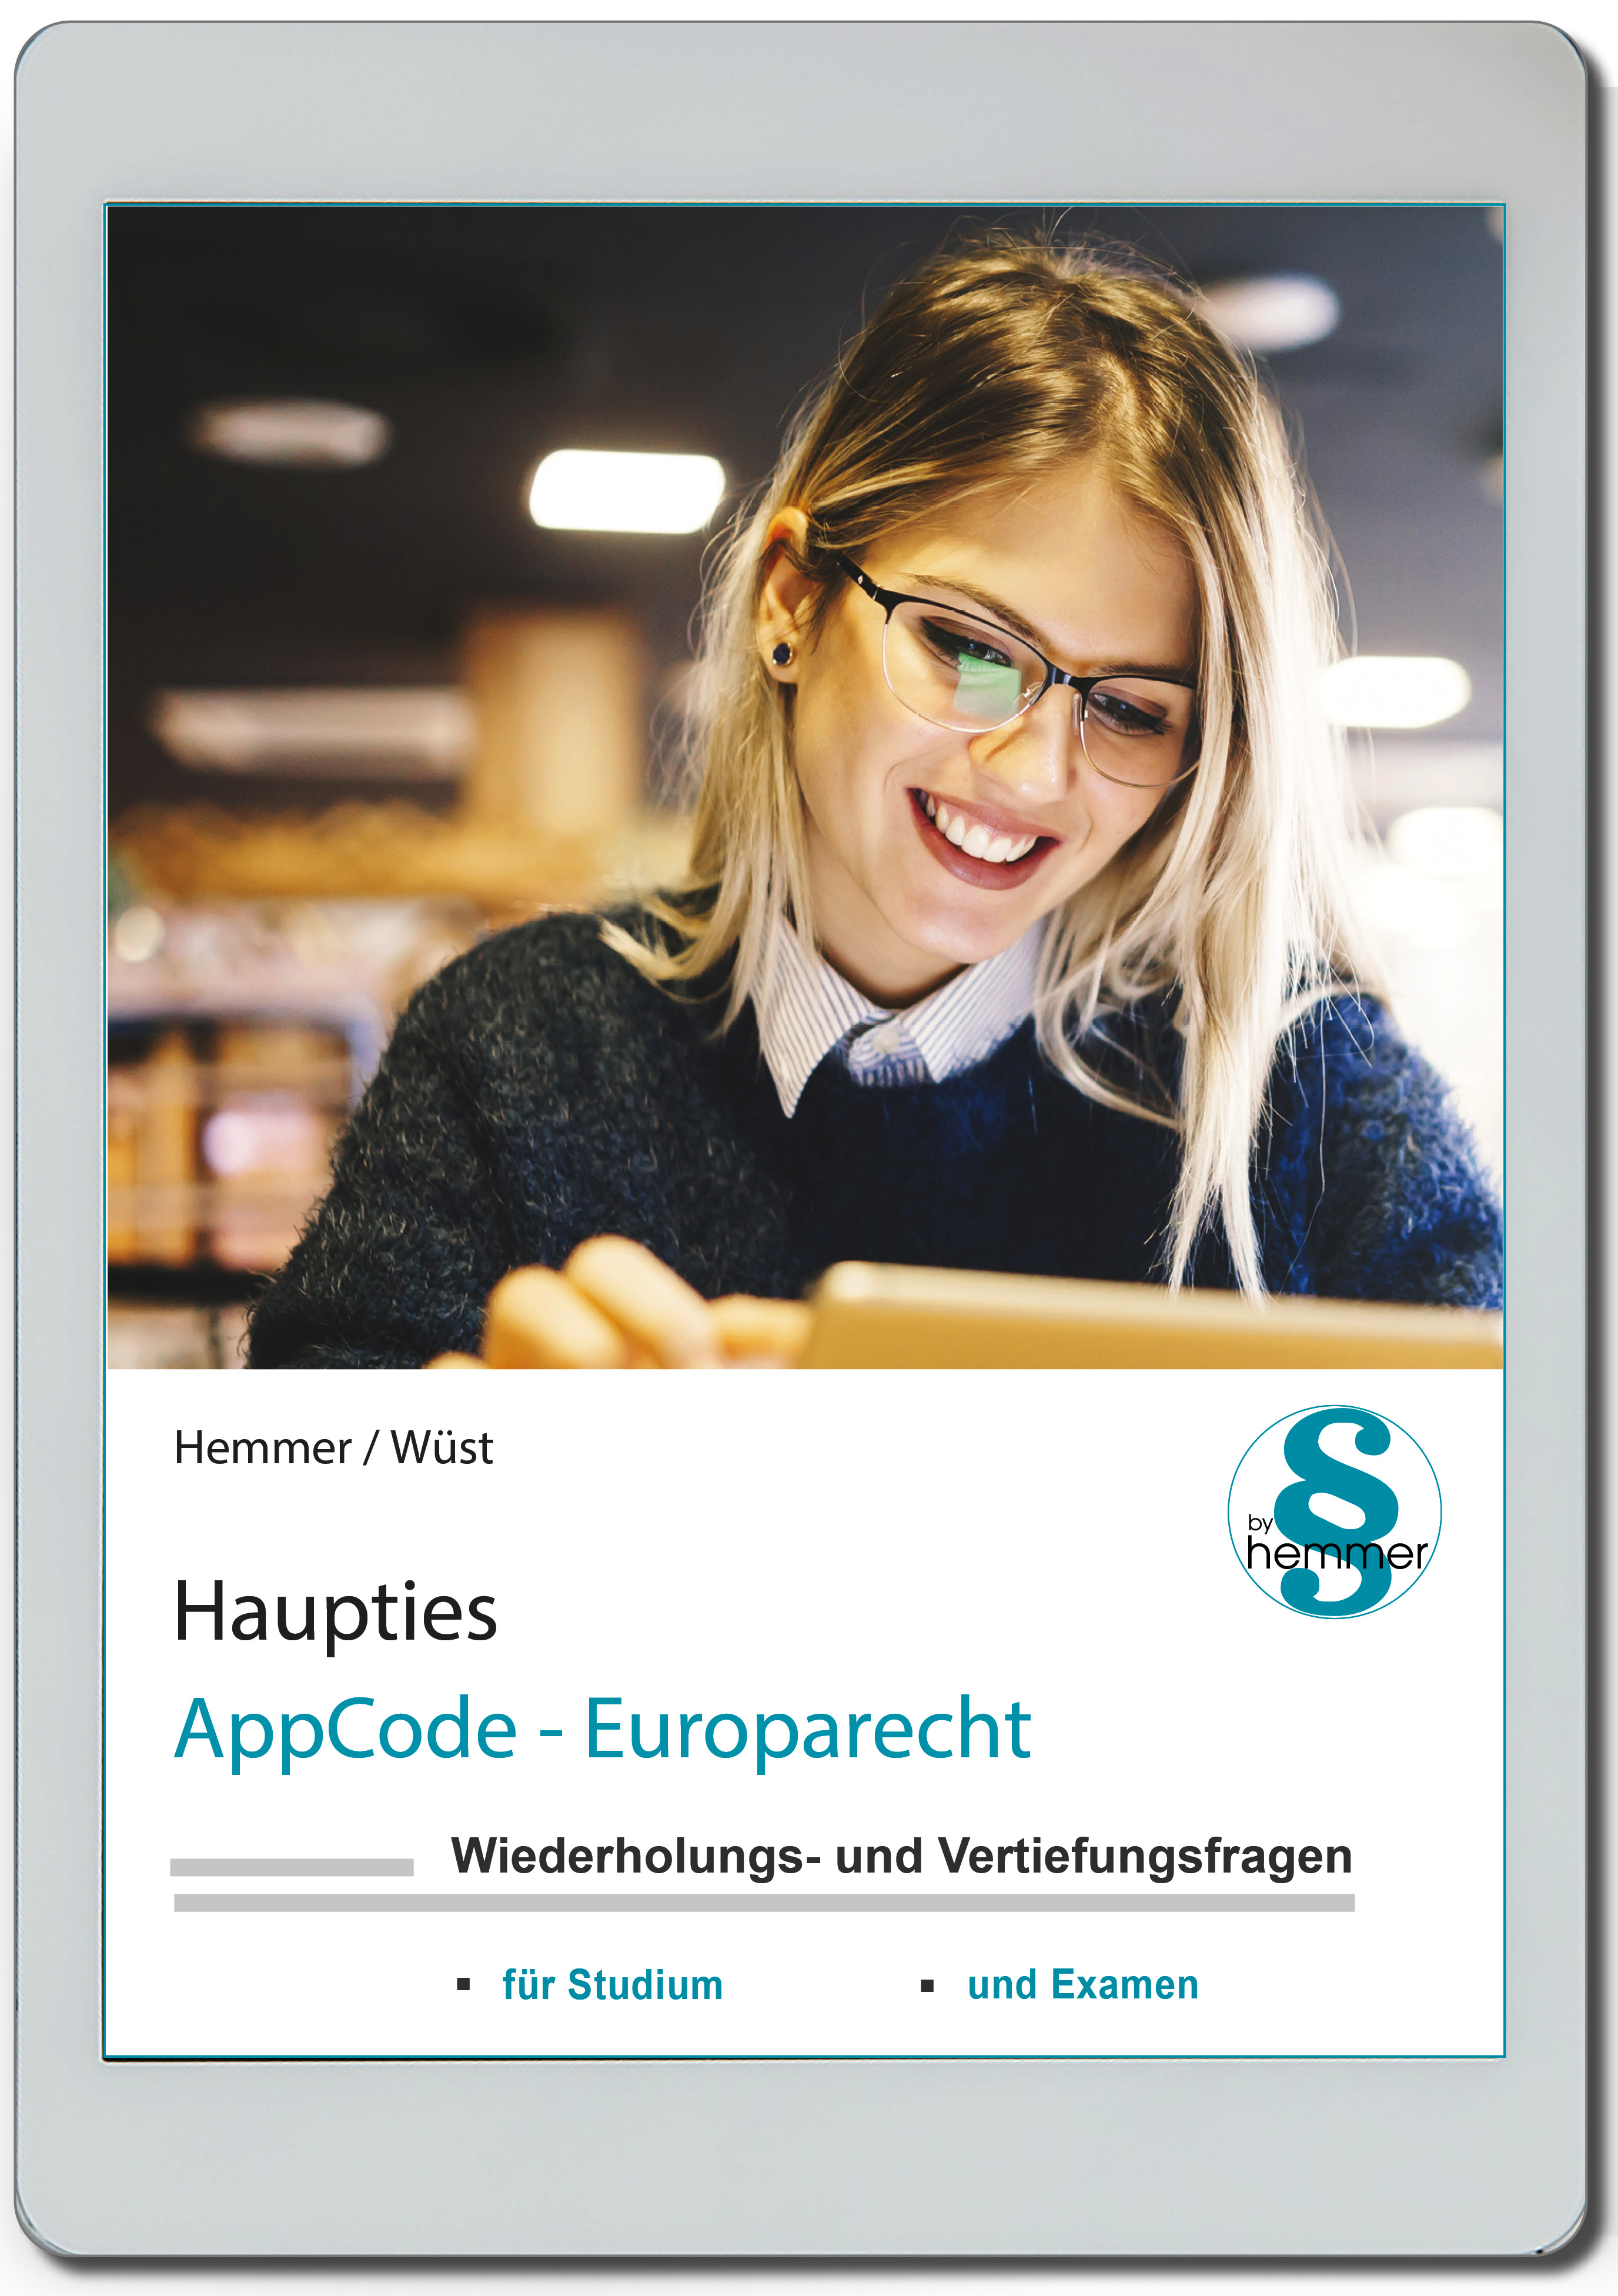 AppCode - haupties - Europarecht